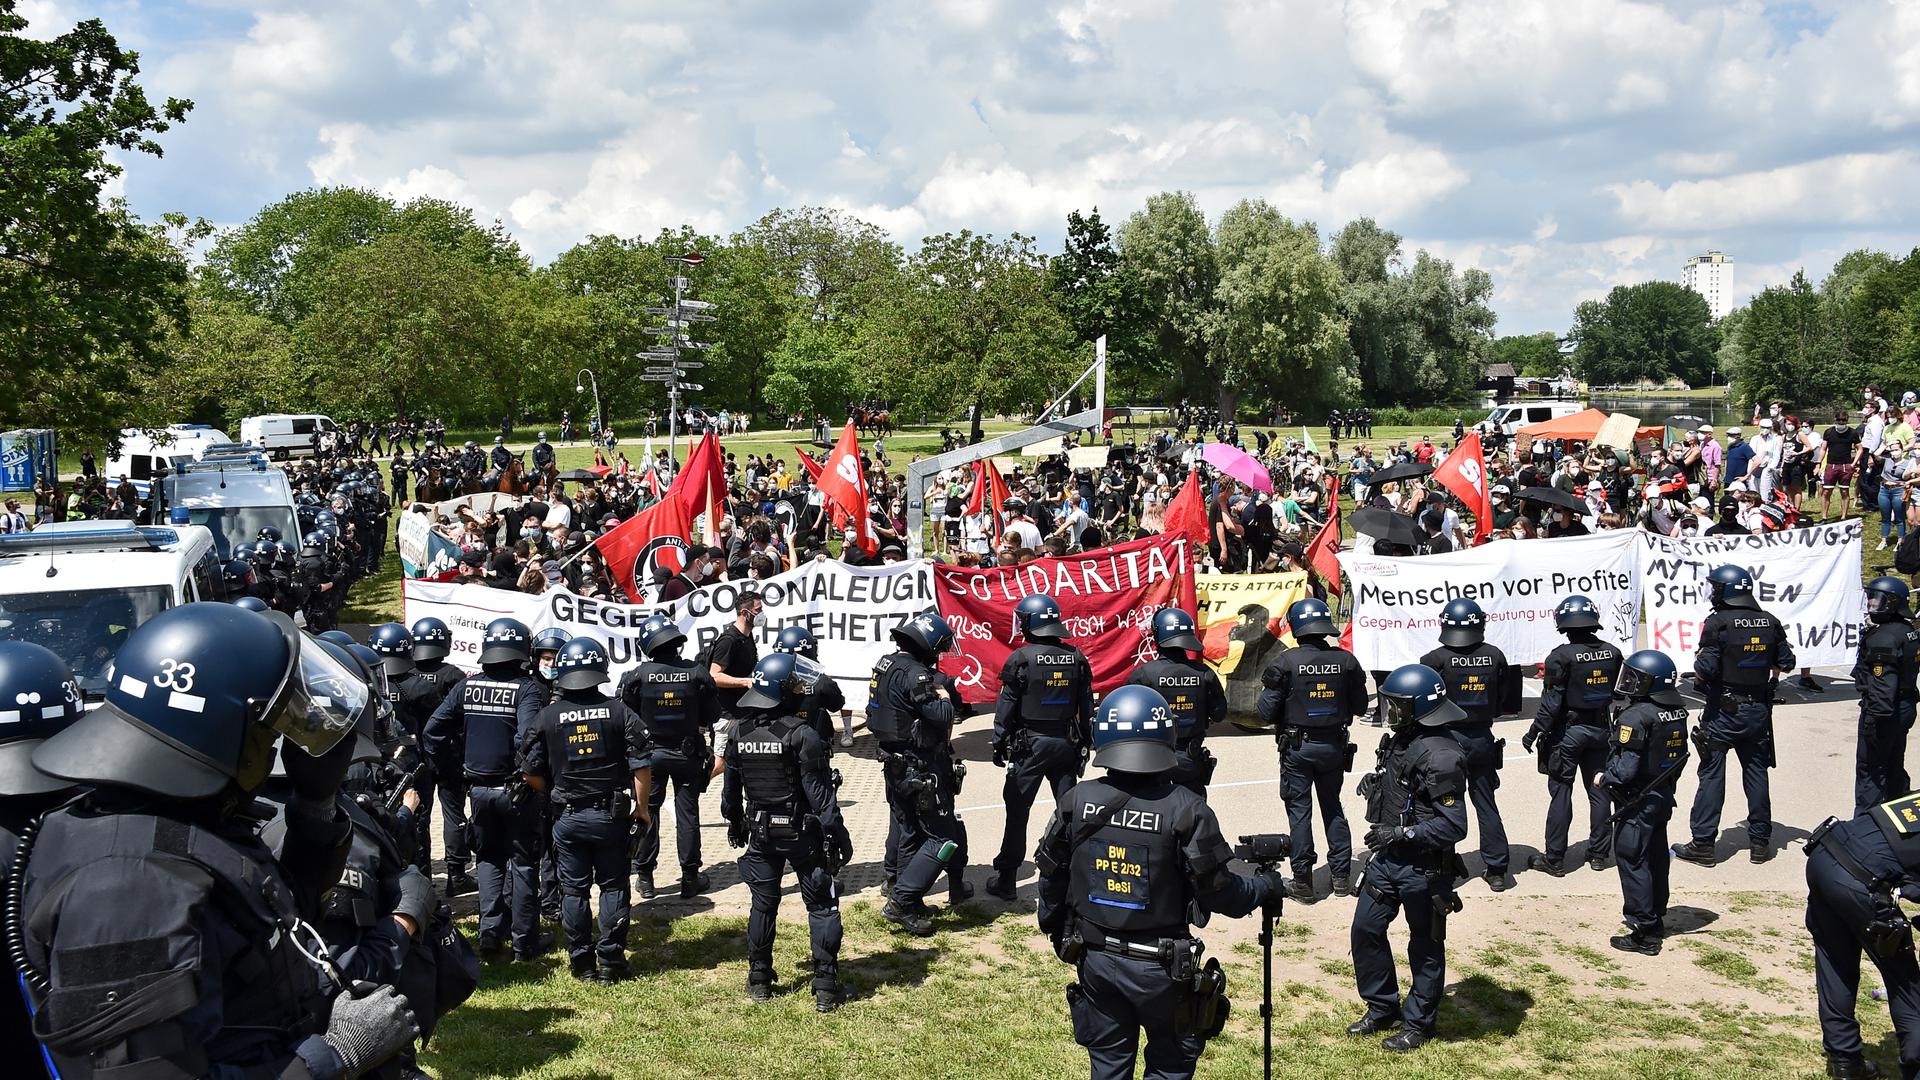 Mit lauten Rufen und Transparenten rückten die Antifa-Aktivisten immer näher in Richtung Querdenker-Versammlung vor.